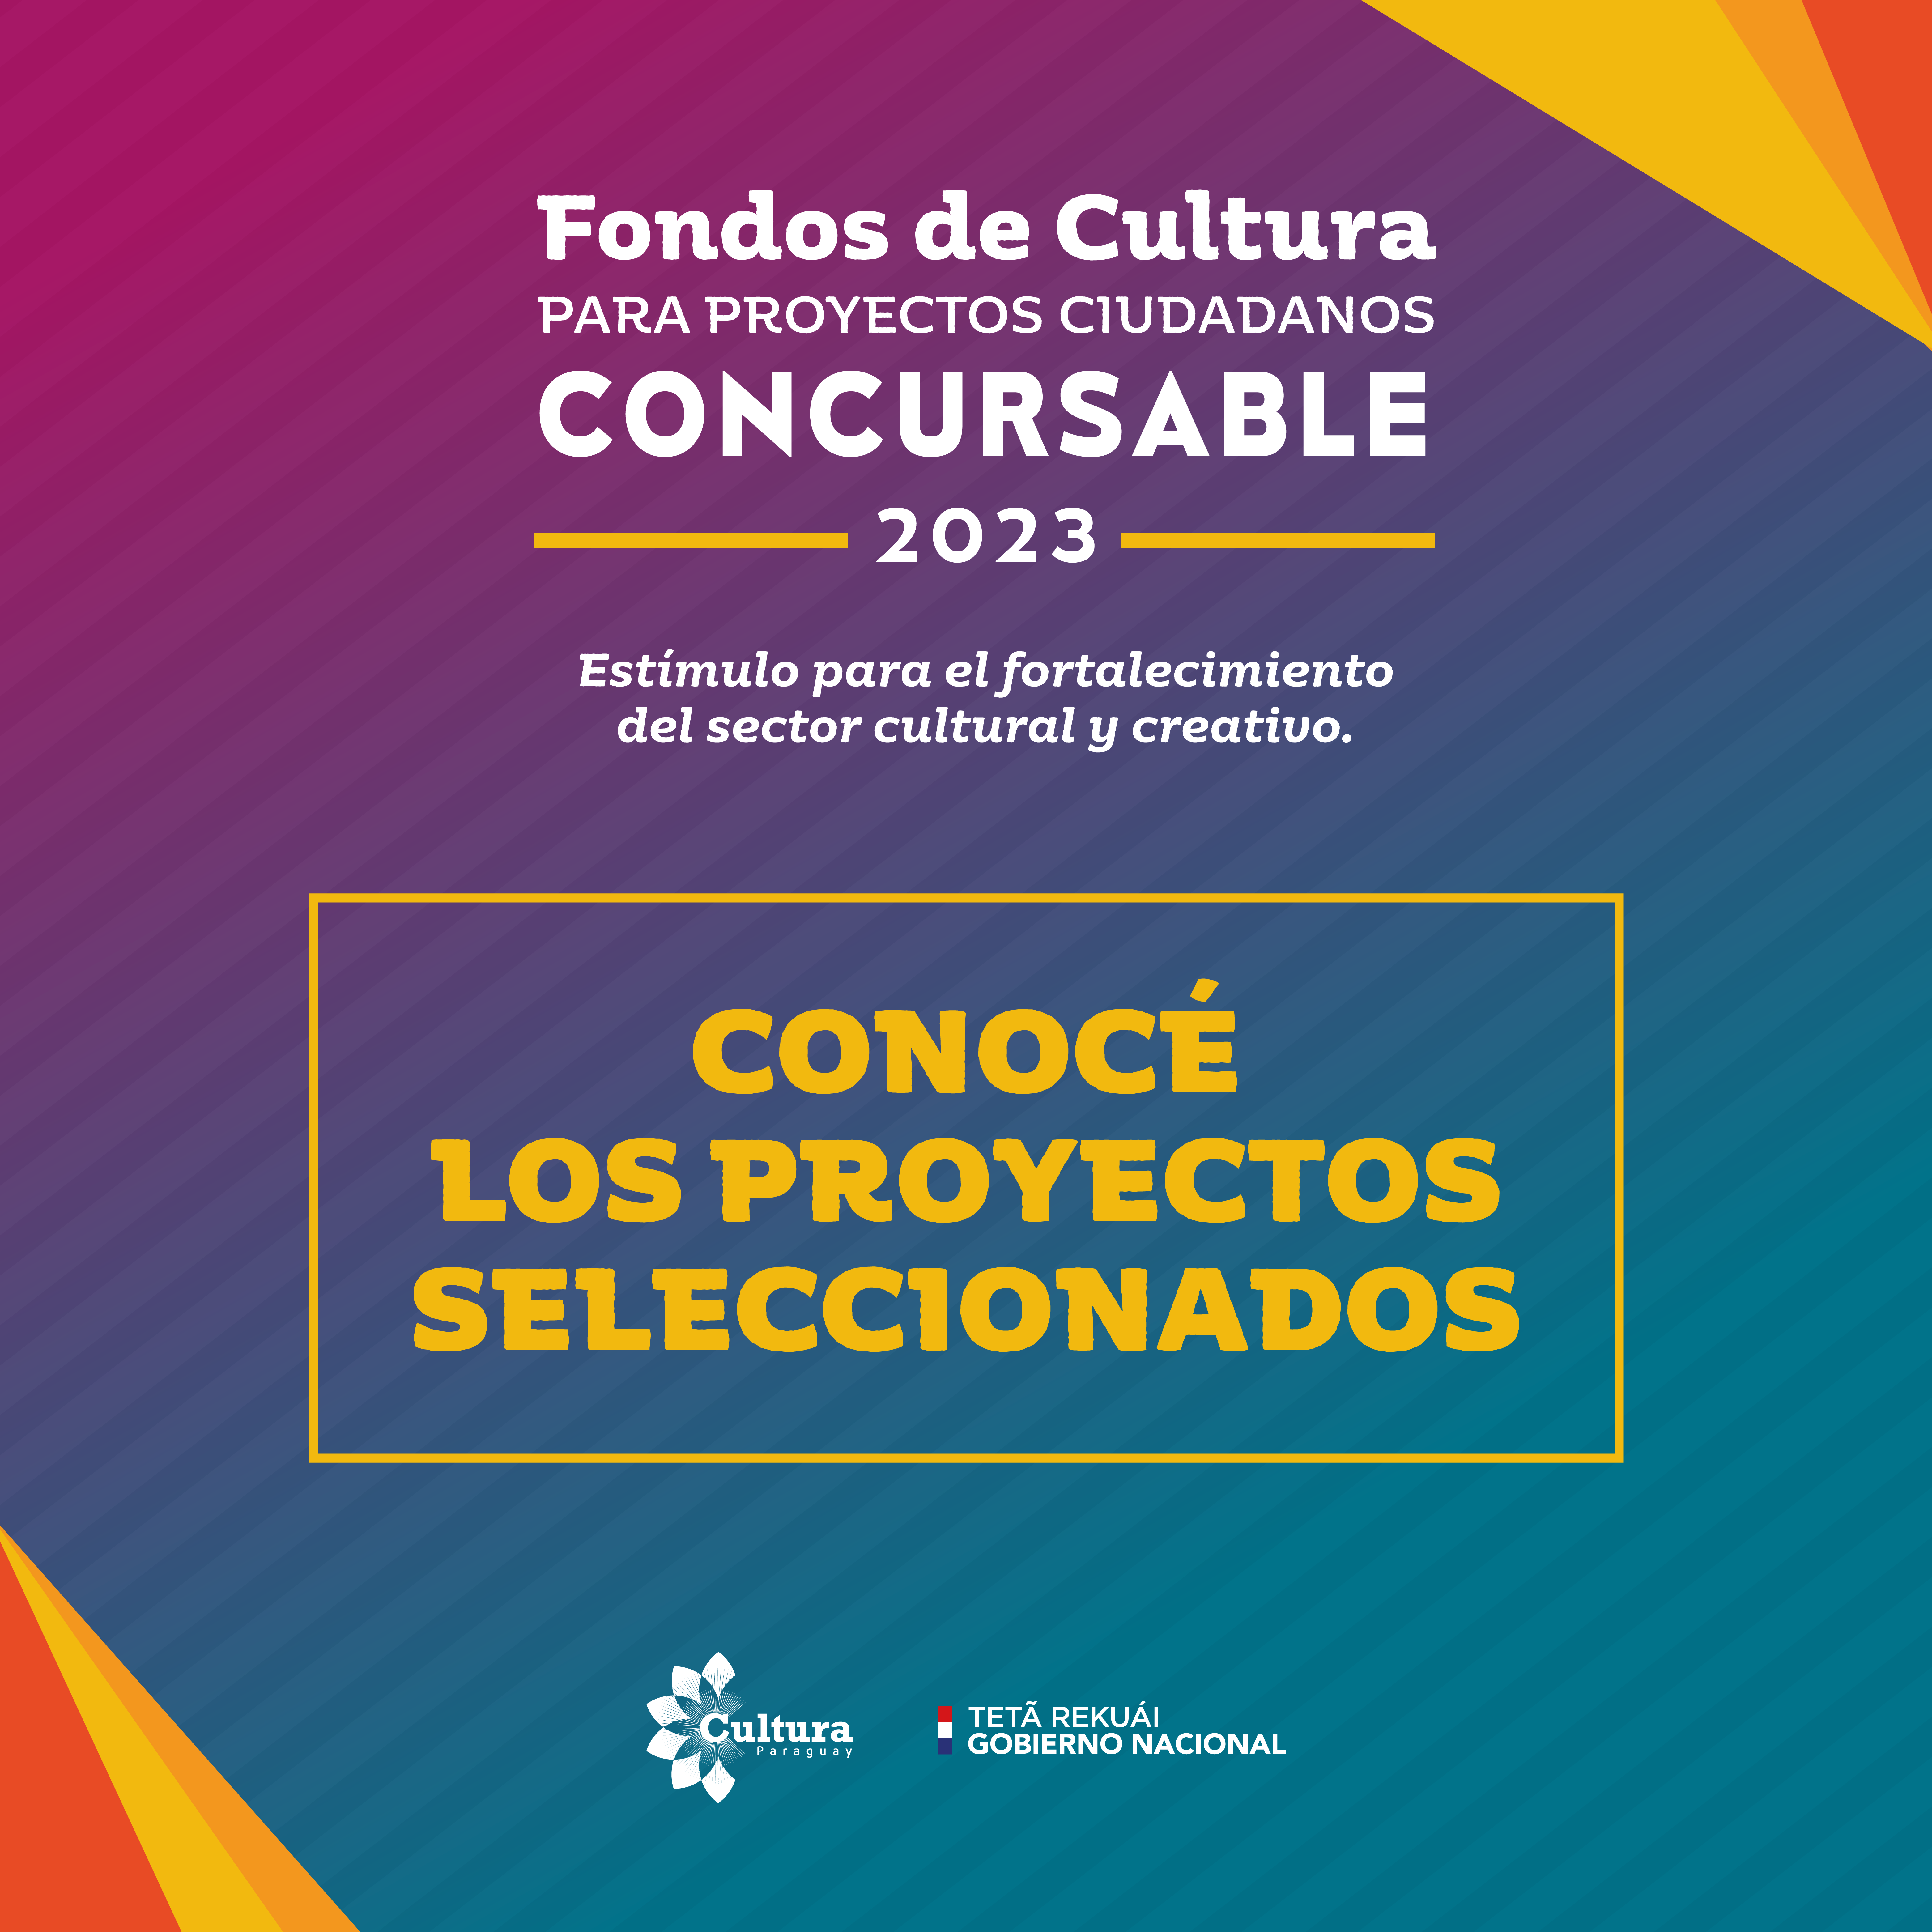 65 proyectos culturales fueron seleccionados para recibir apoyo a través del programa Fondos de Cultura 2023 imagen